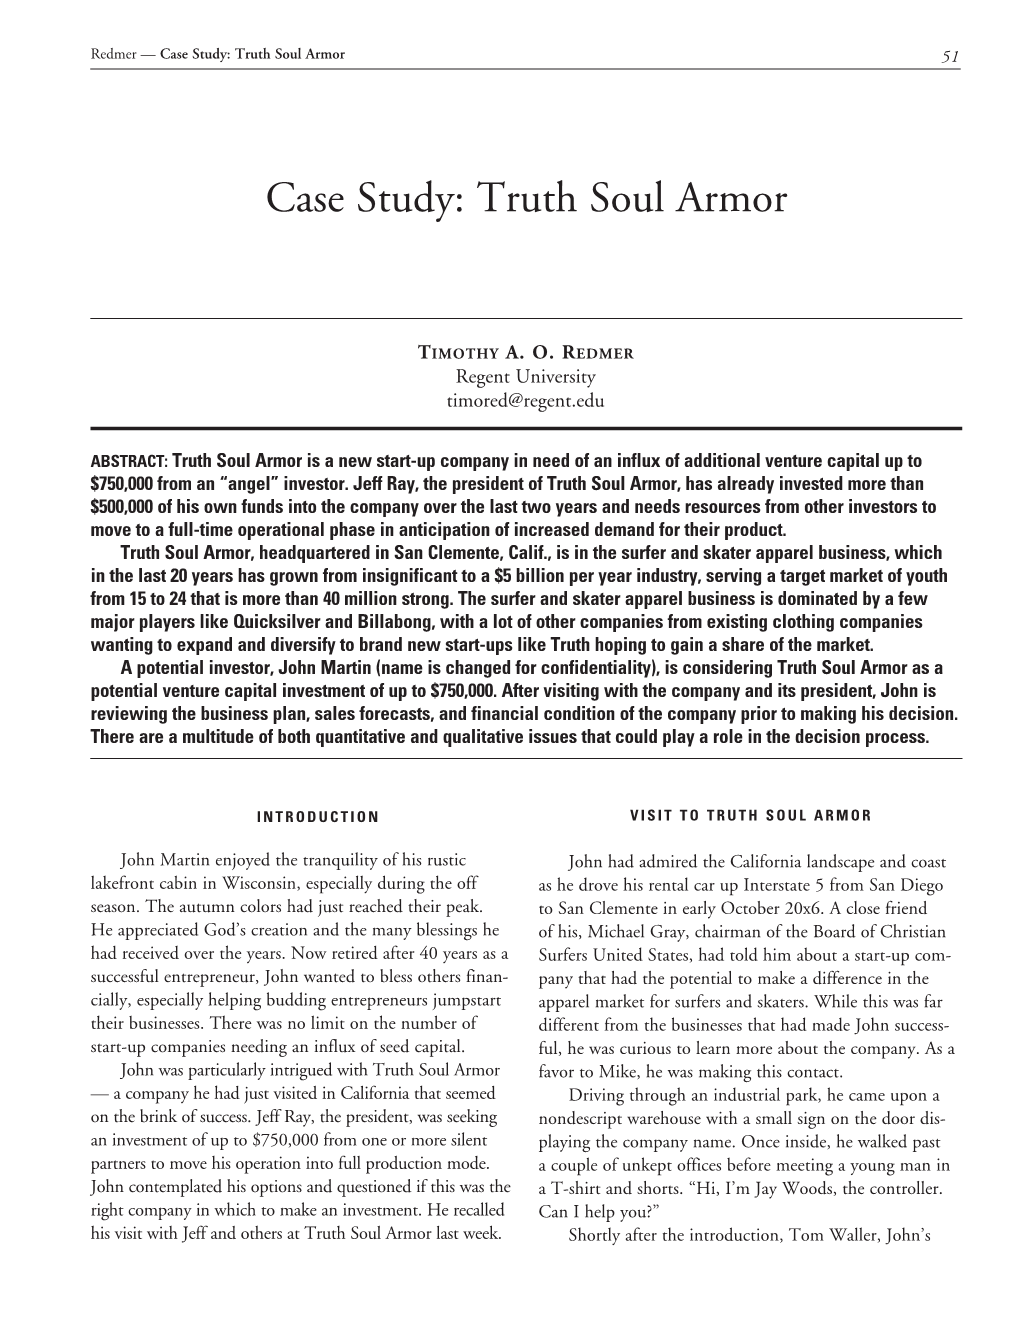 Truth Soul Armor 51